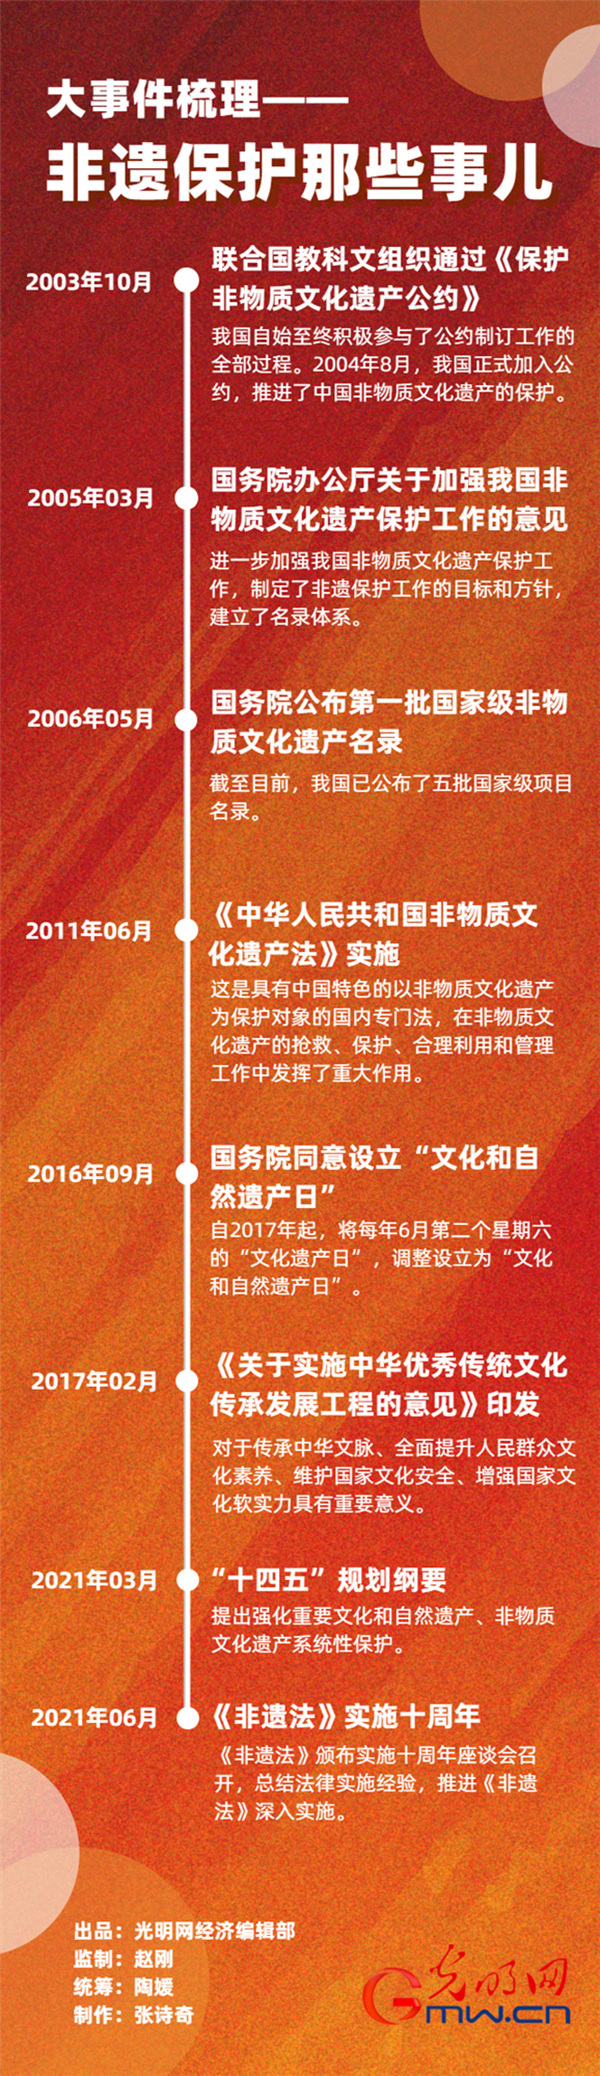 《非遗法》颁布十周年：为非遗保护传承贡献“中国智慧”